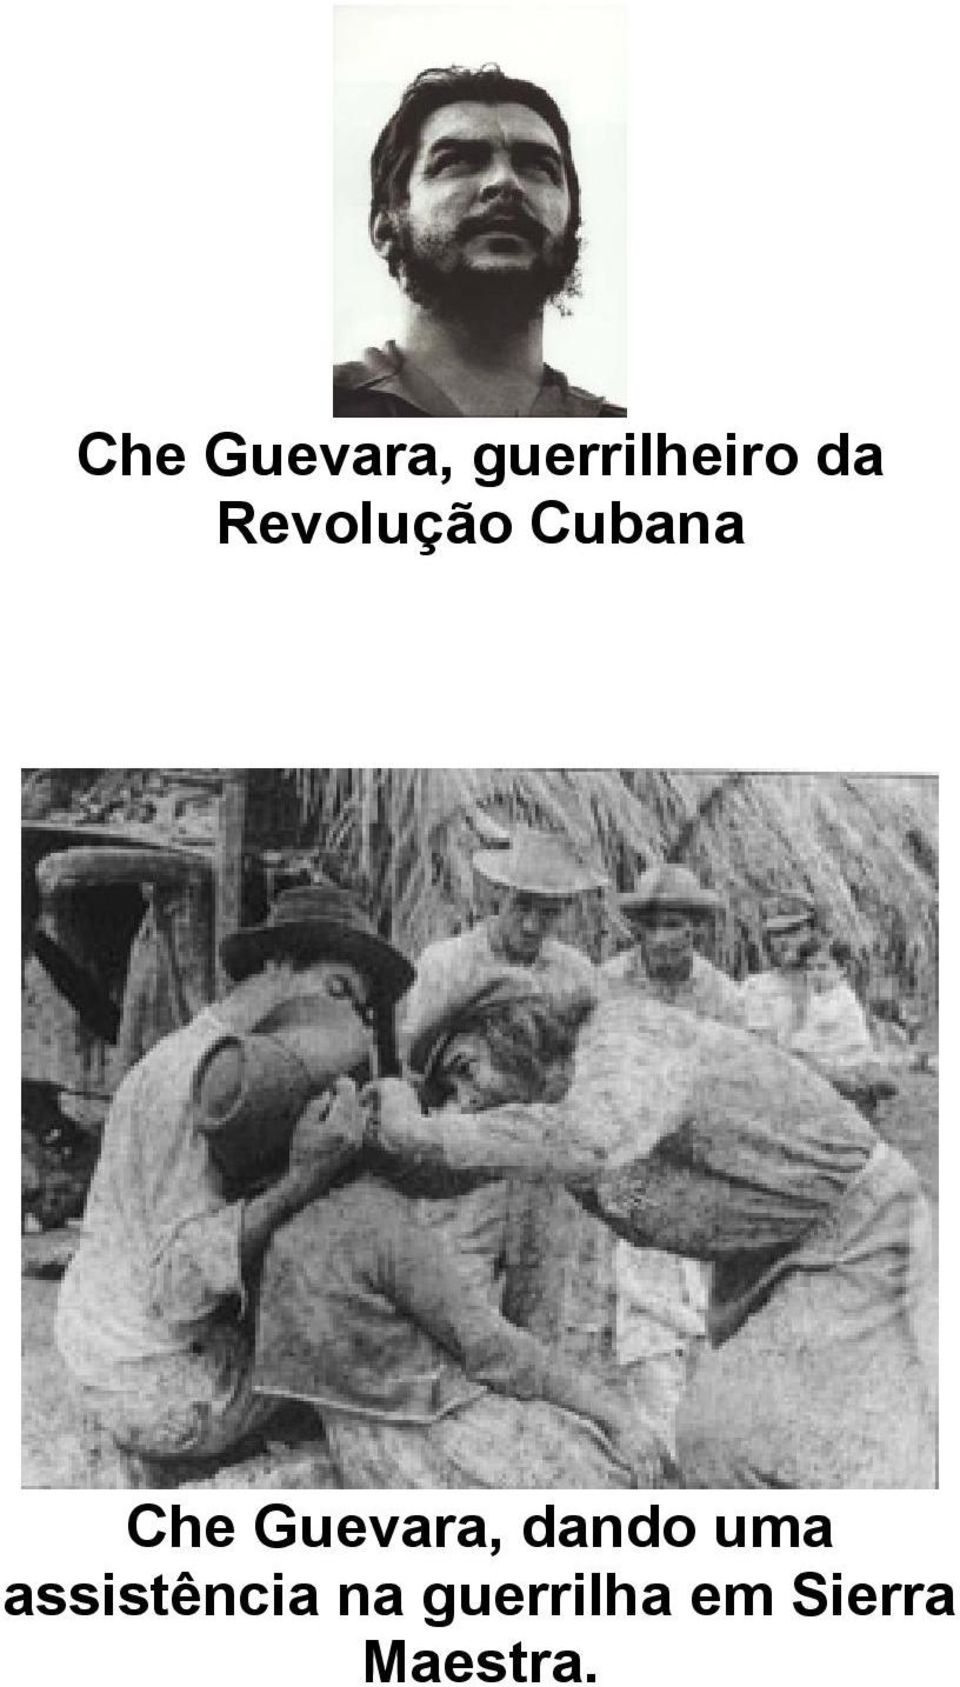 Guevara, dando uma